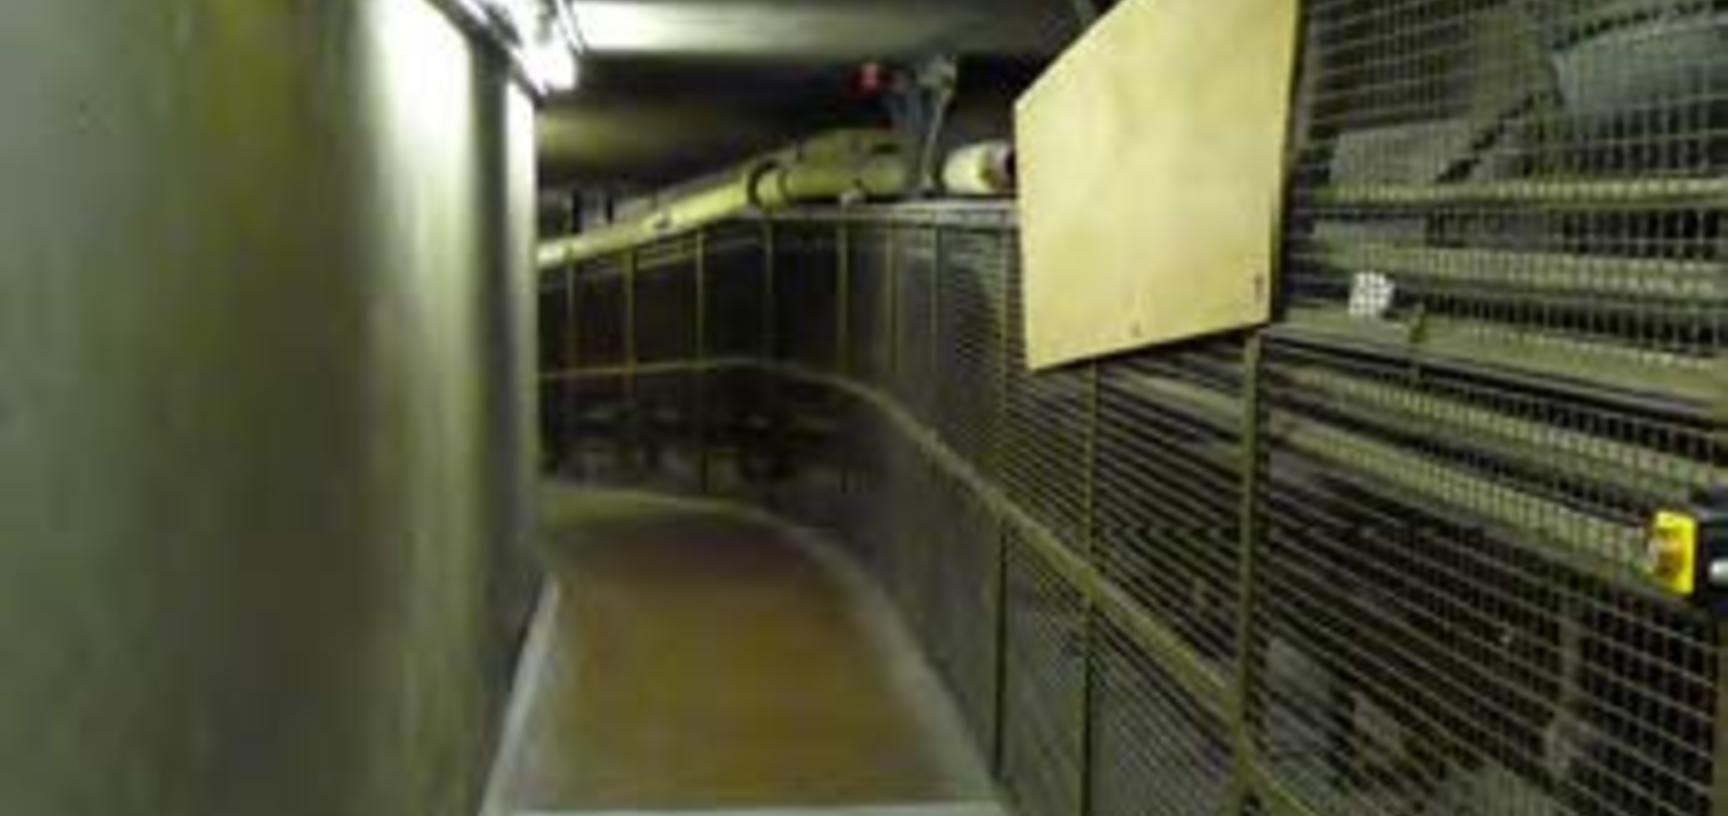 Book conveyor in tunnel